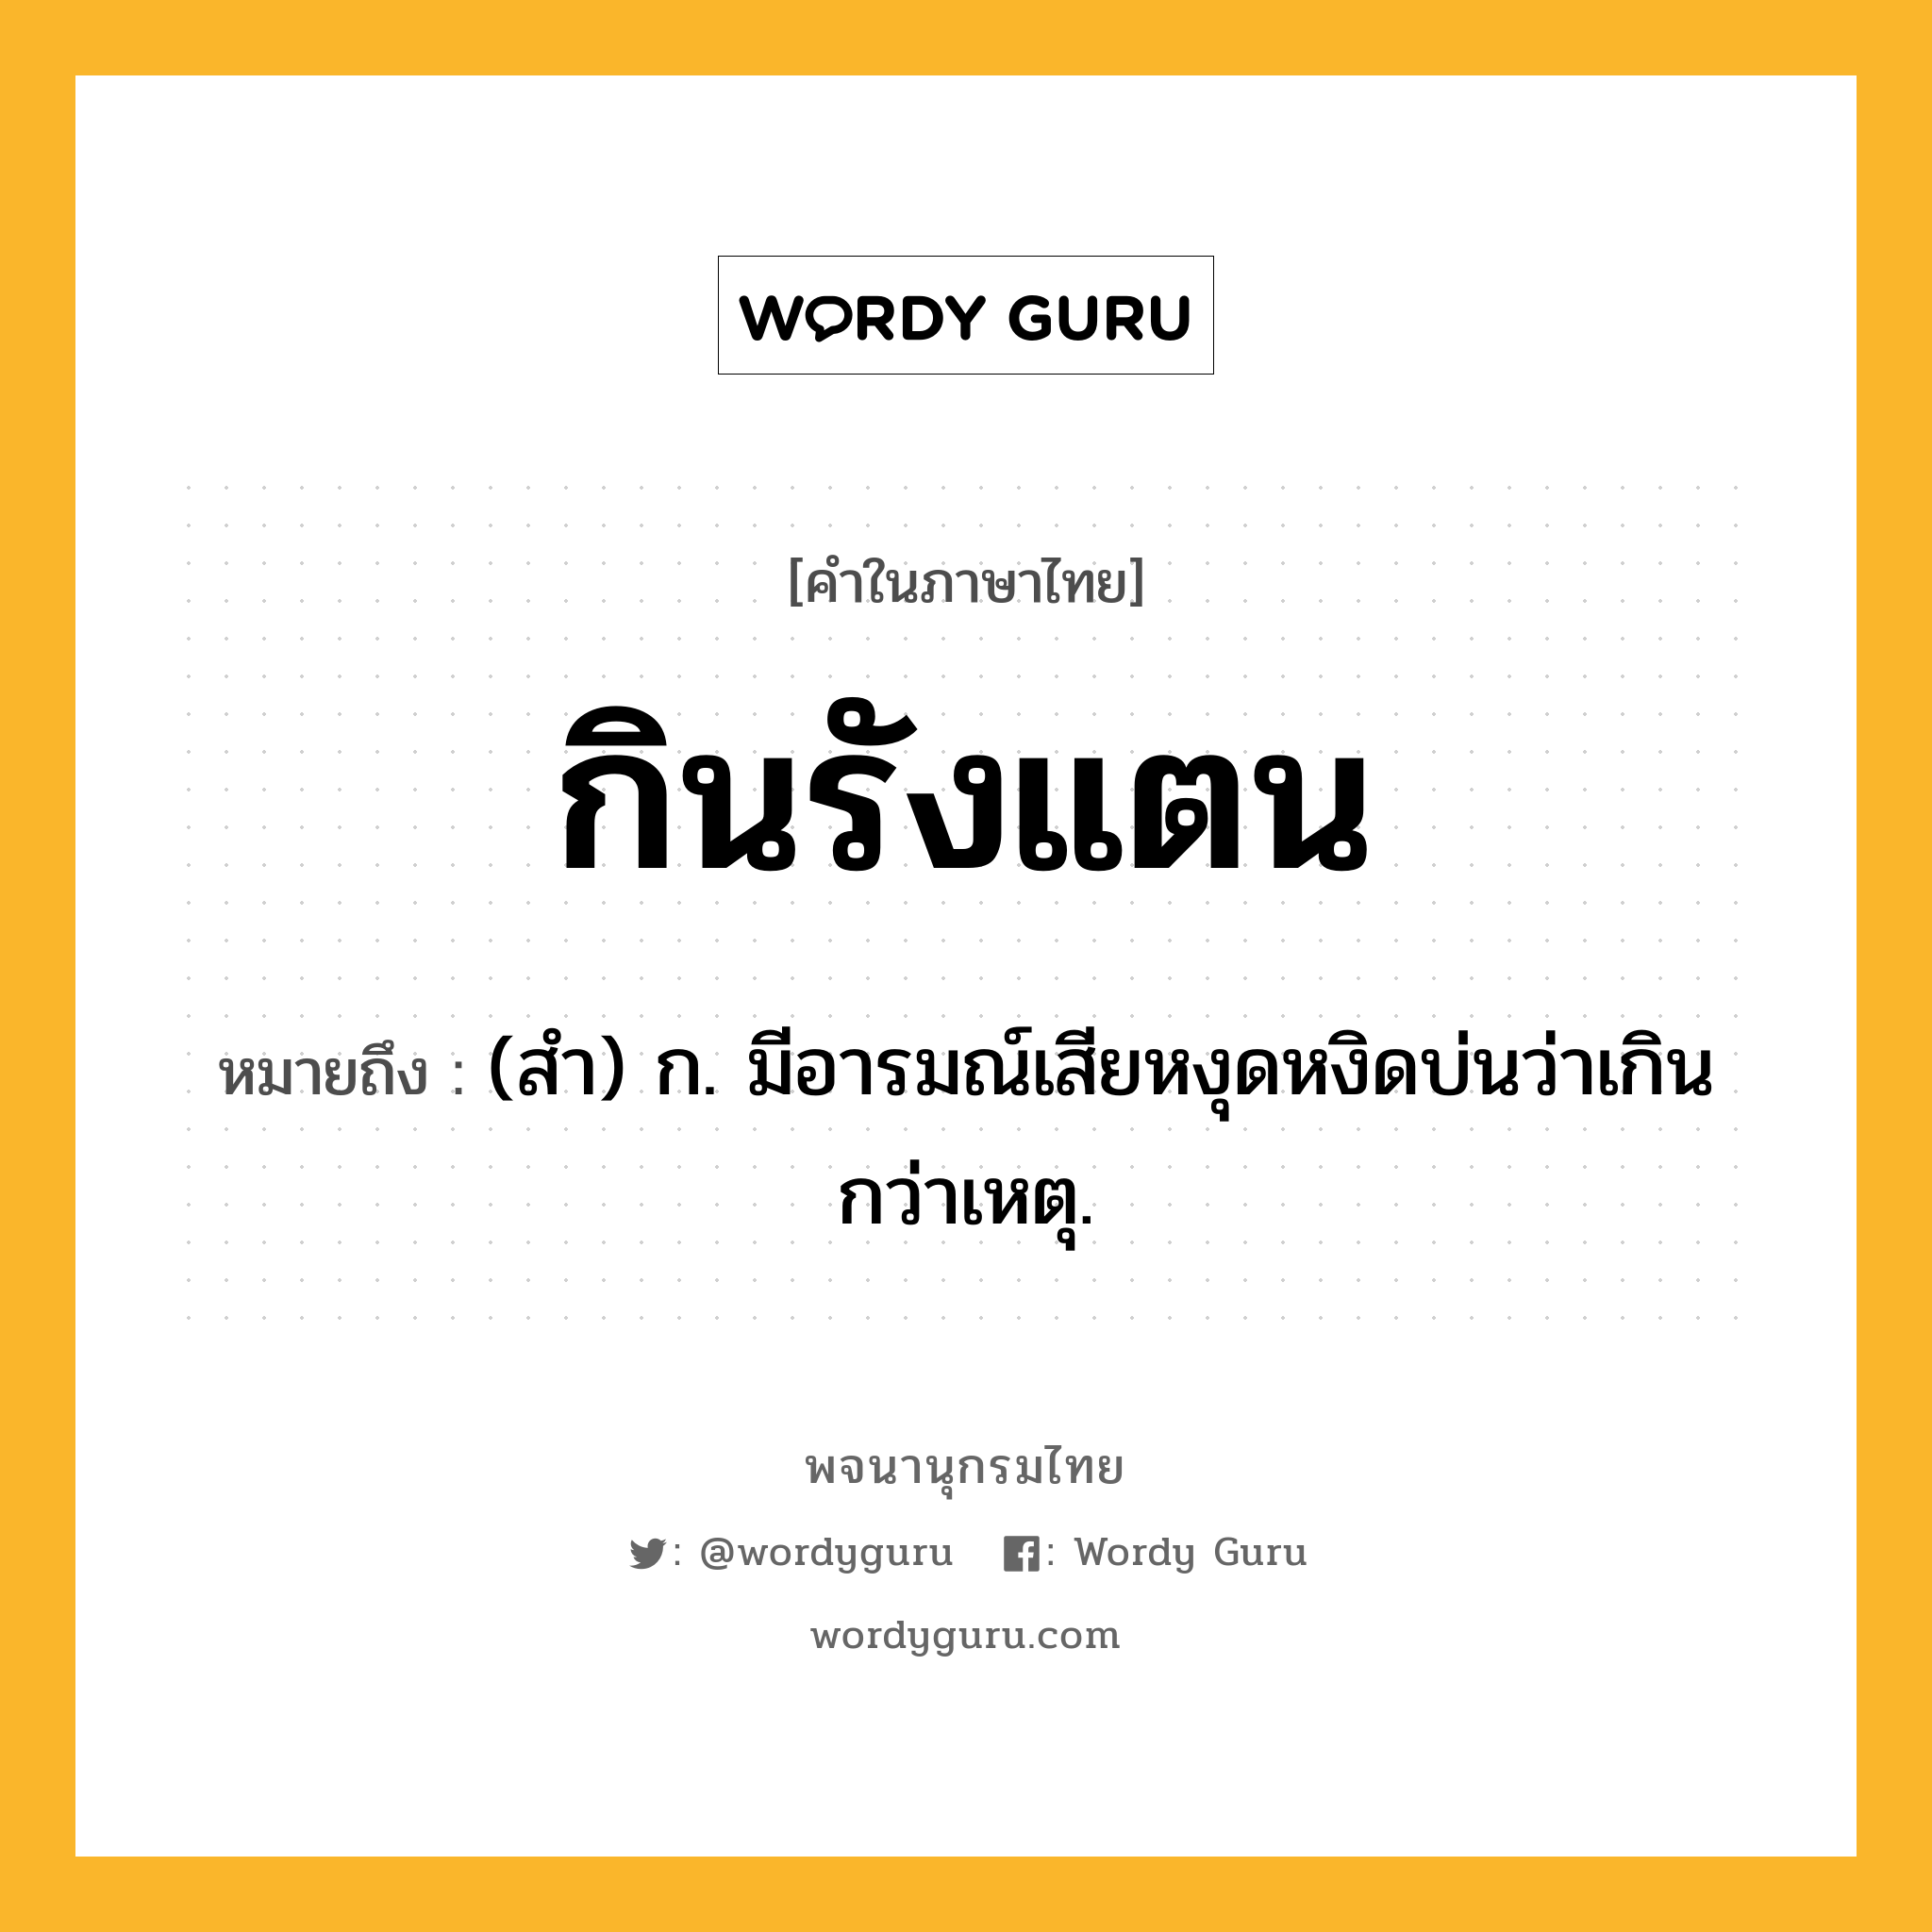 กินรังแตน หมายถึงอะไร?, คำในภาษาไทย กินรังแตน หมายถึง (สํา) ก. มีอารมณ์เสียหงุดหงิดบ่นว่าเกินกว่าเหตุ.